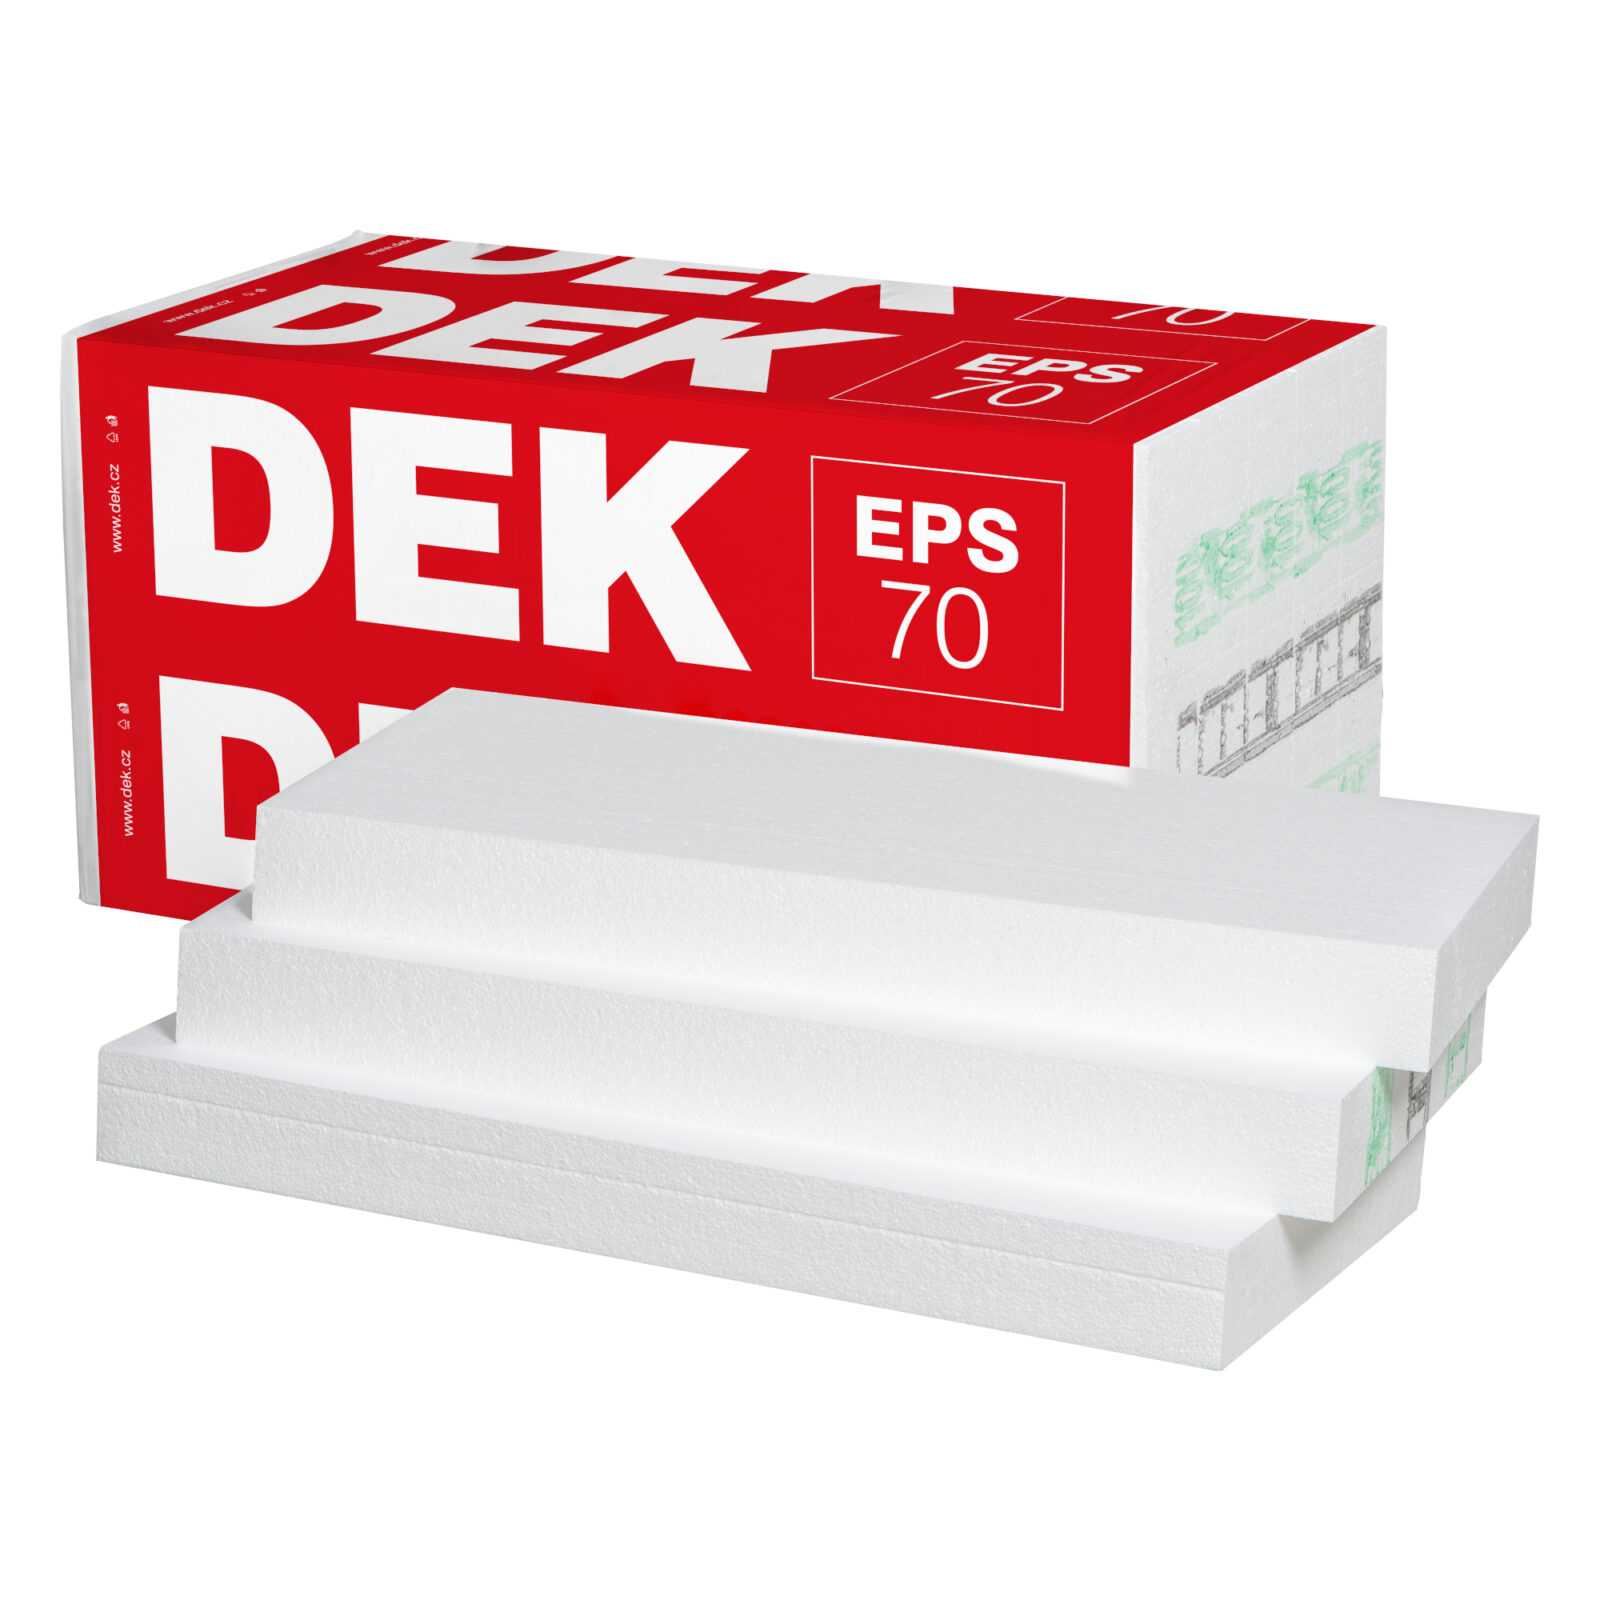 Tepelná izolace DEK EPS 70 F 160 mm (1